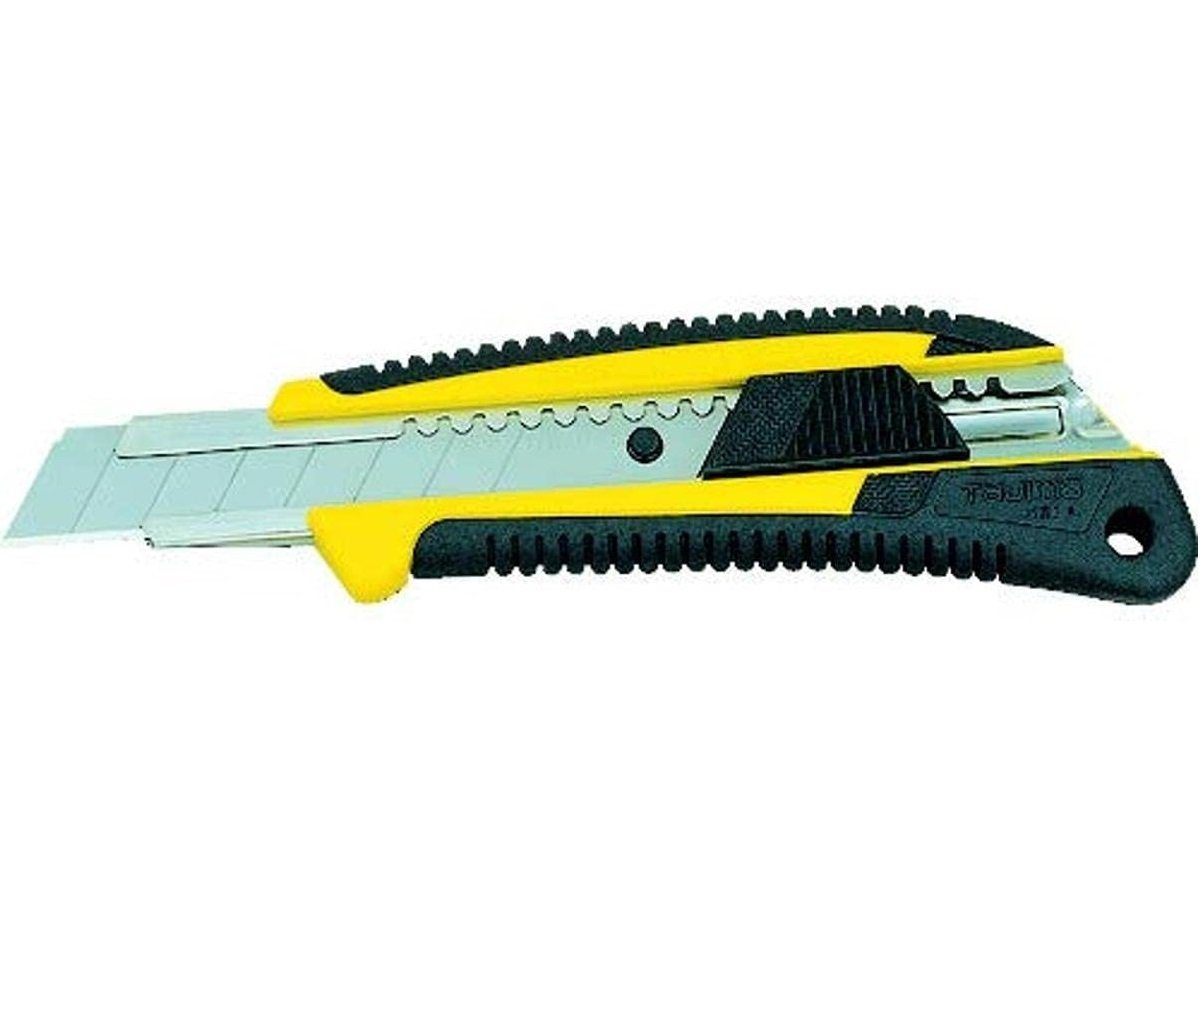 Tajima Teppichmesser Cuttermesser 18mm, ergonomischer Griff